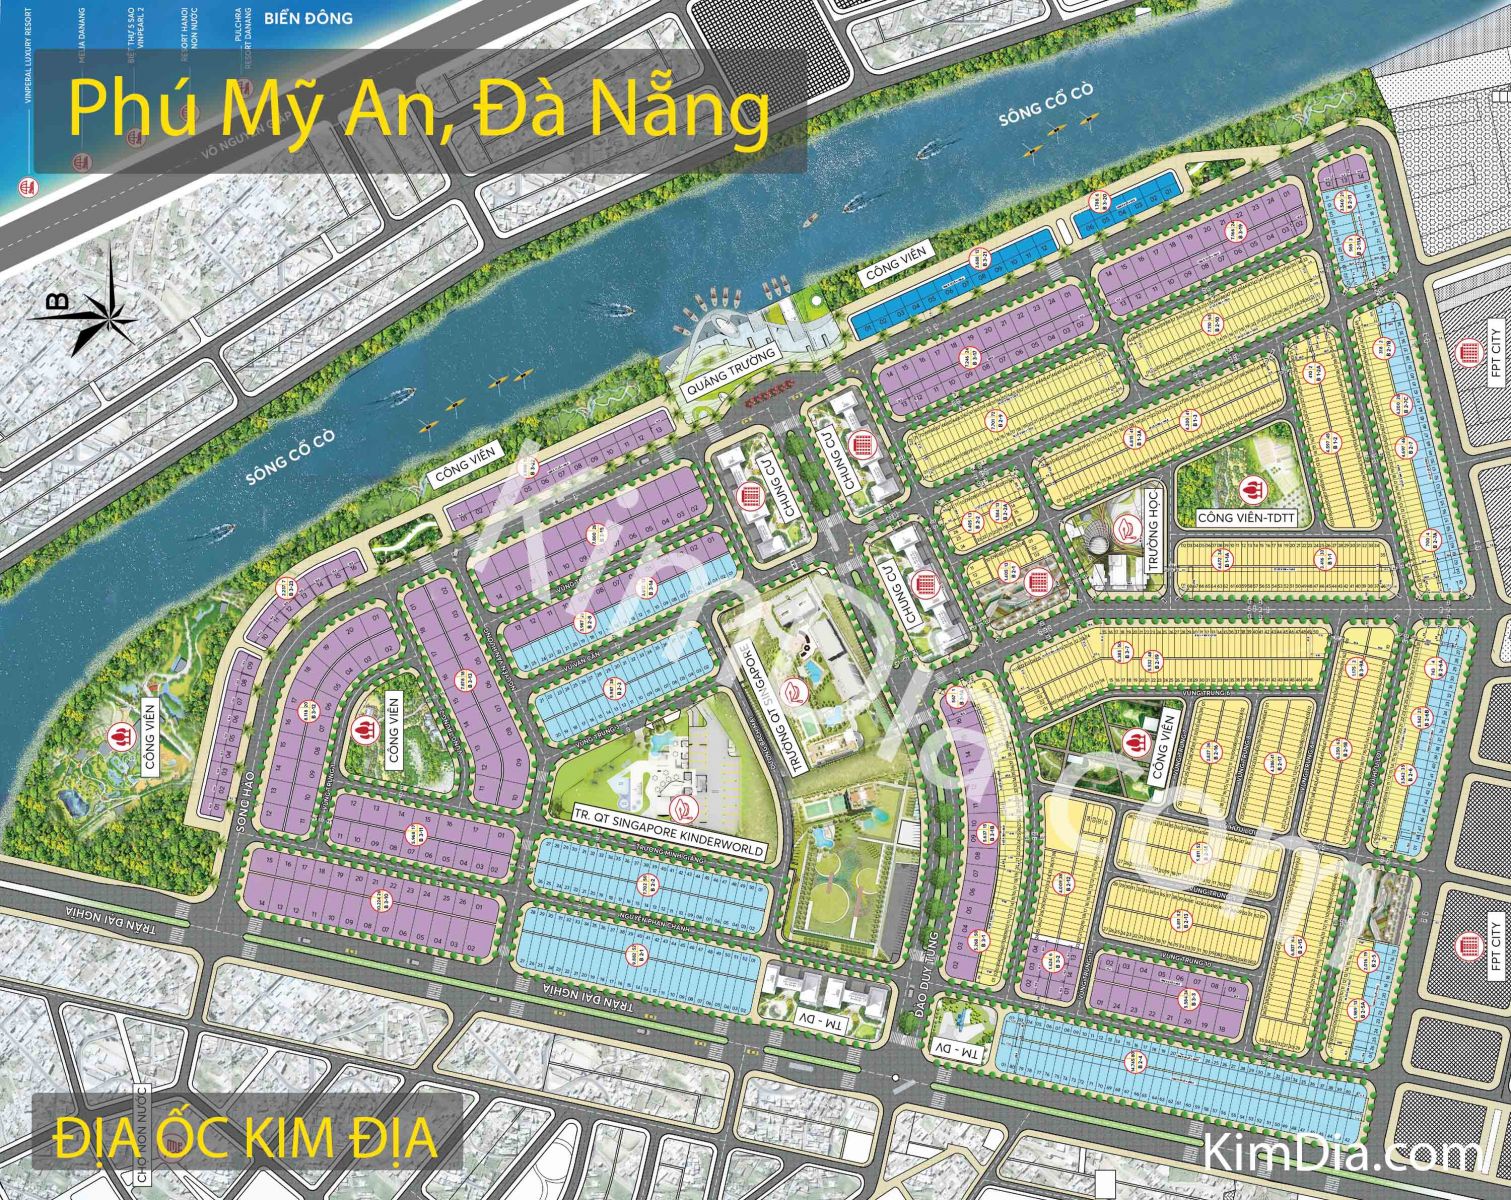 bản đồ khu đô thị phú mỹ an đà nẵng